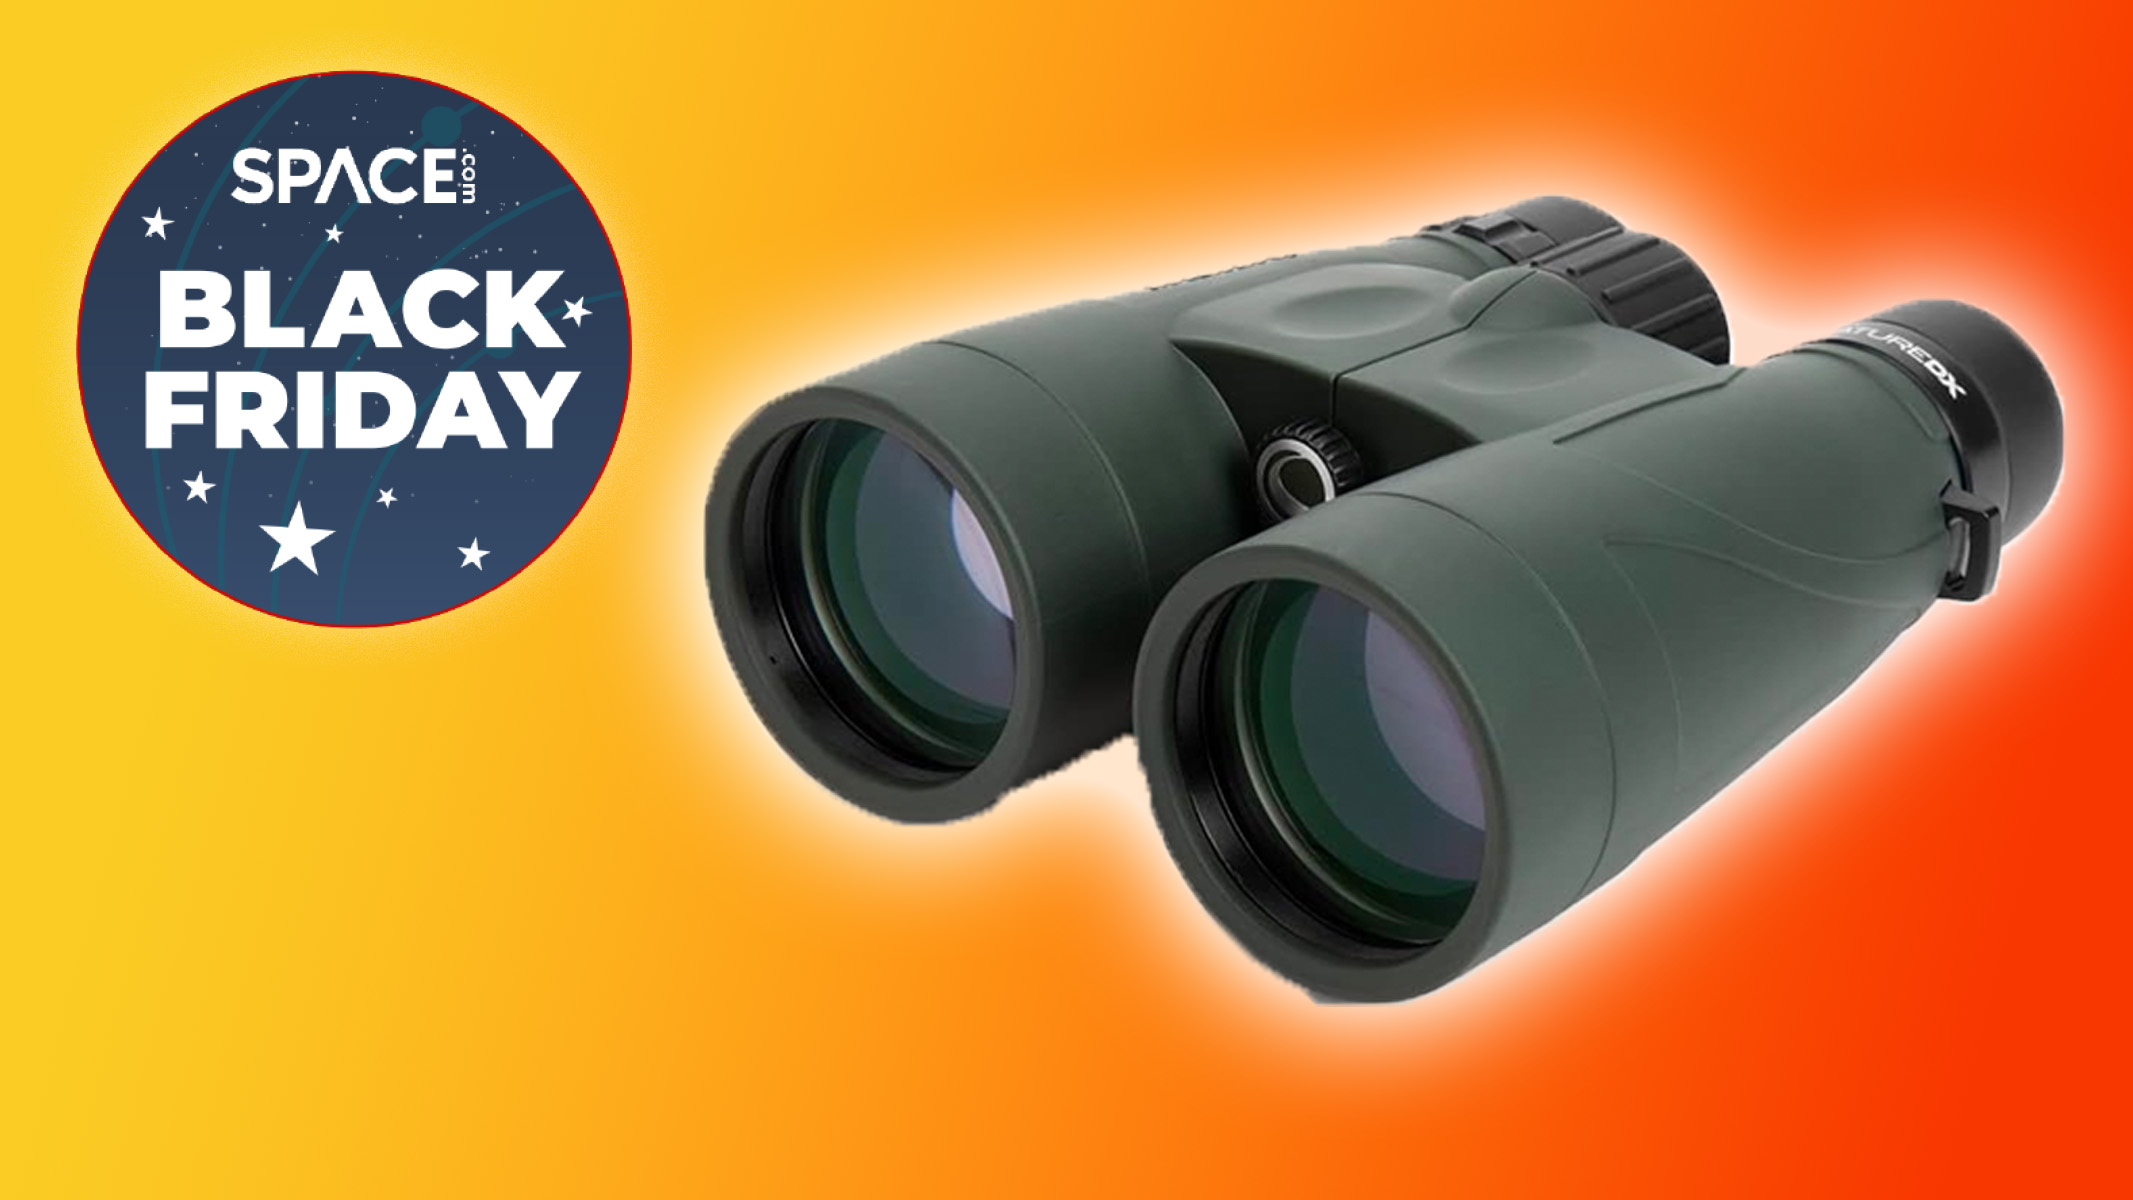 Black Friday binocular deal — save $94 on Celestron binos Space